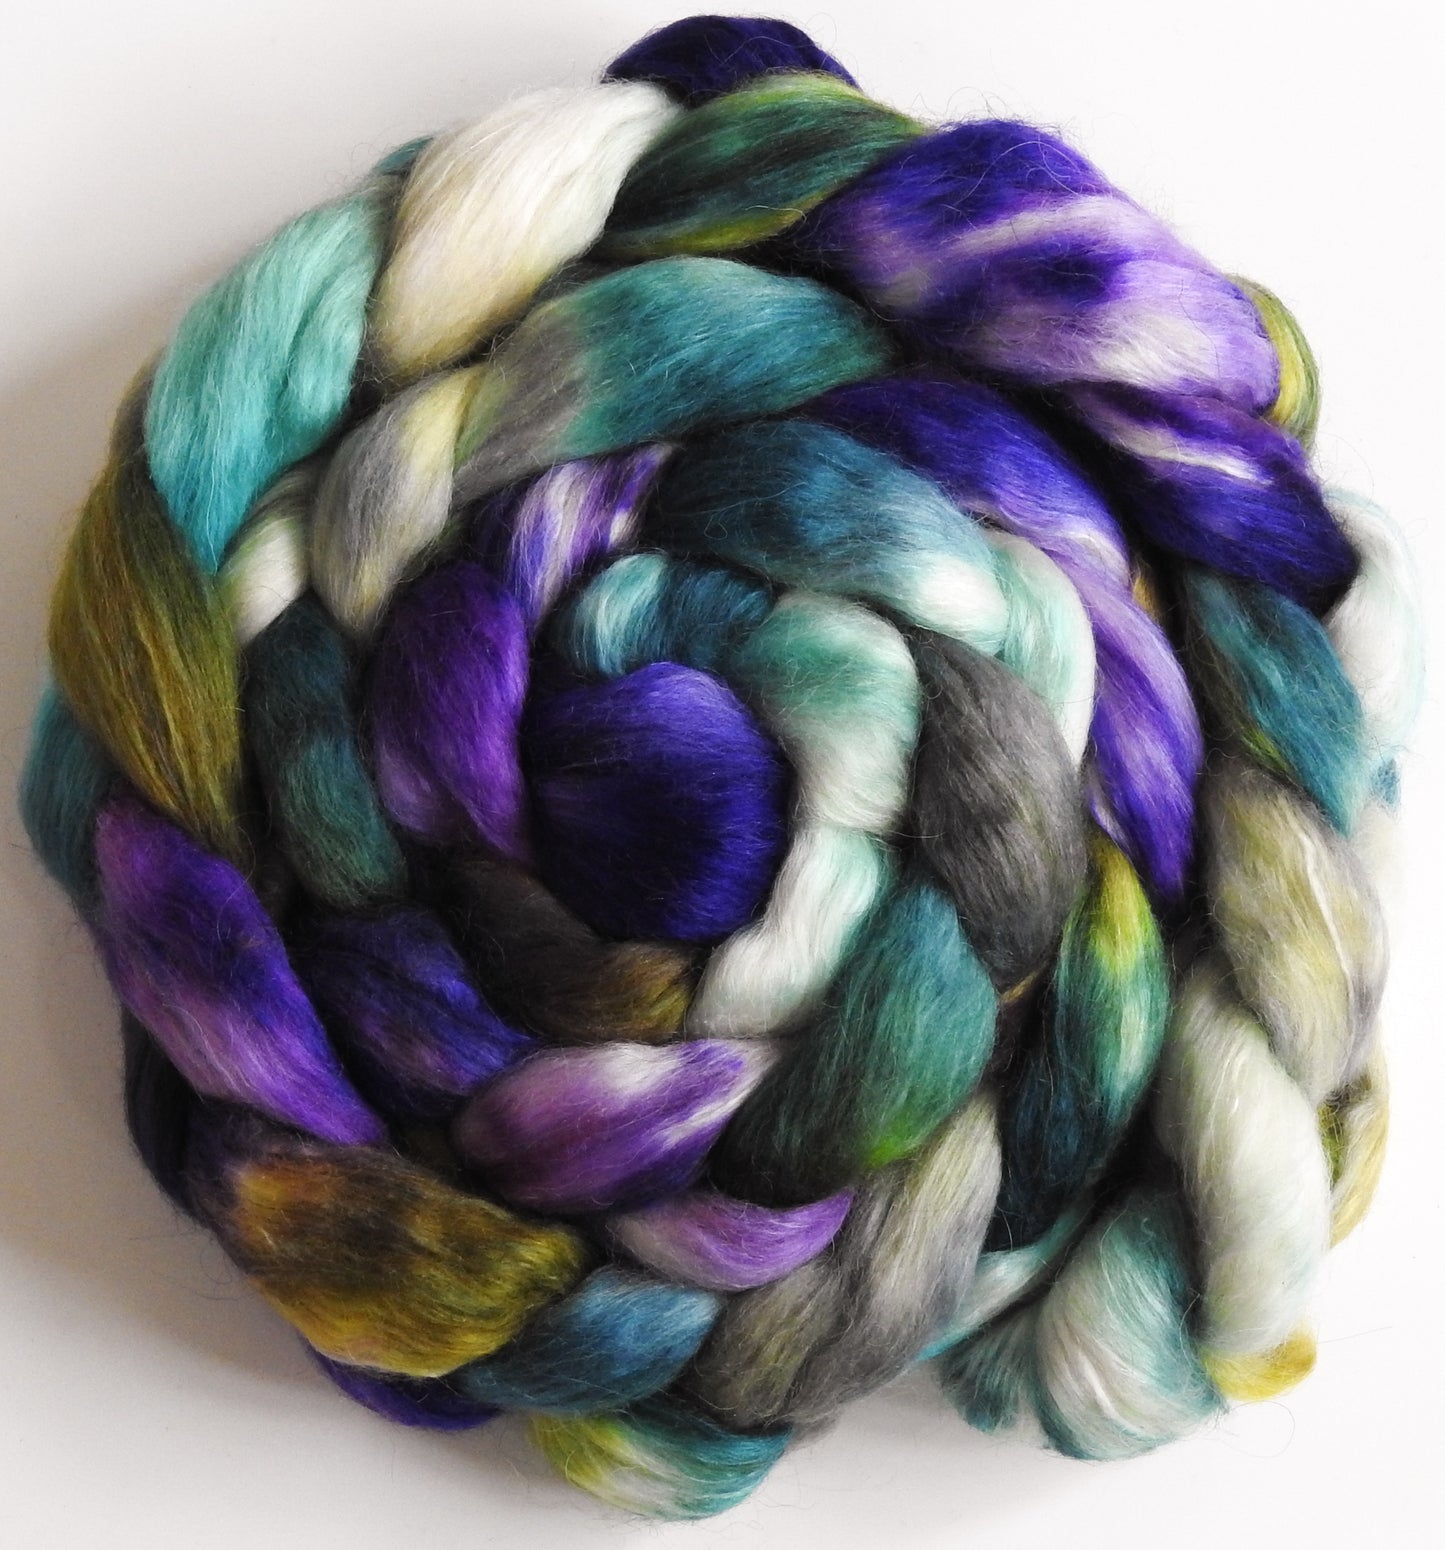 African Violets (5.4 oz) - Batt in a Braid #52- Wensleydale/ Mulberry silk/ Polwarth (60/25/15)